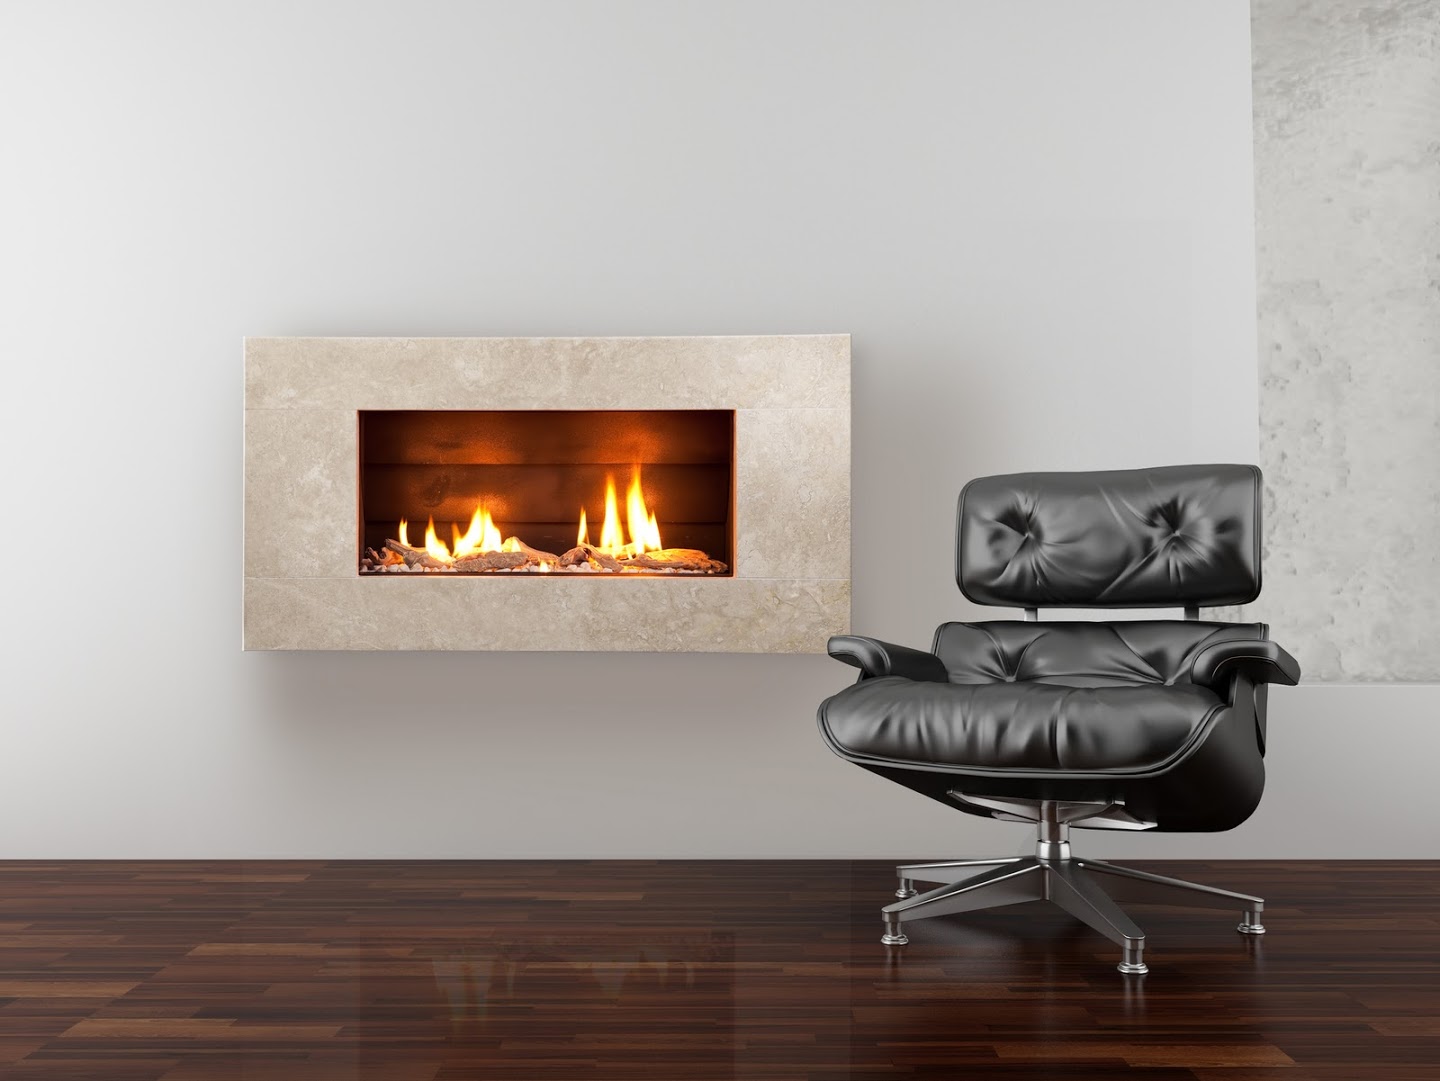 Wall mounted Gas Fireplace